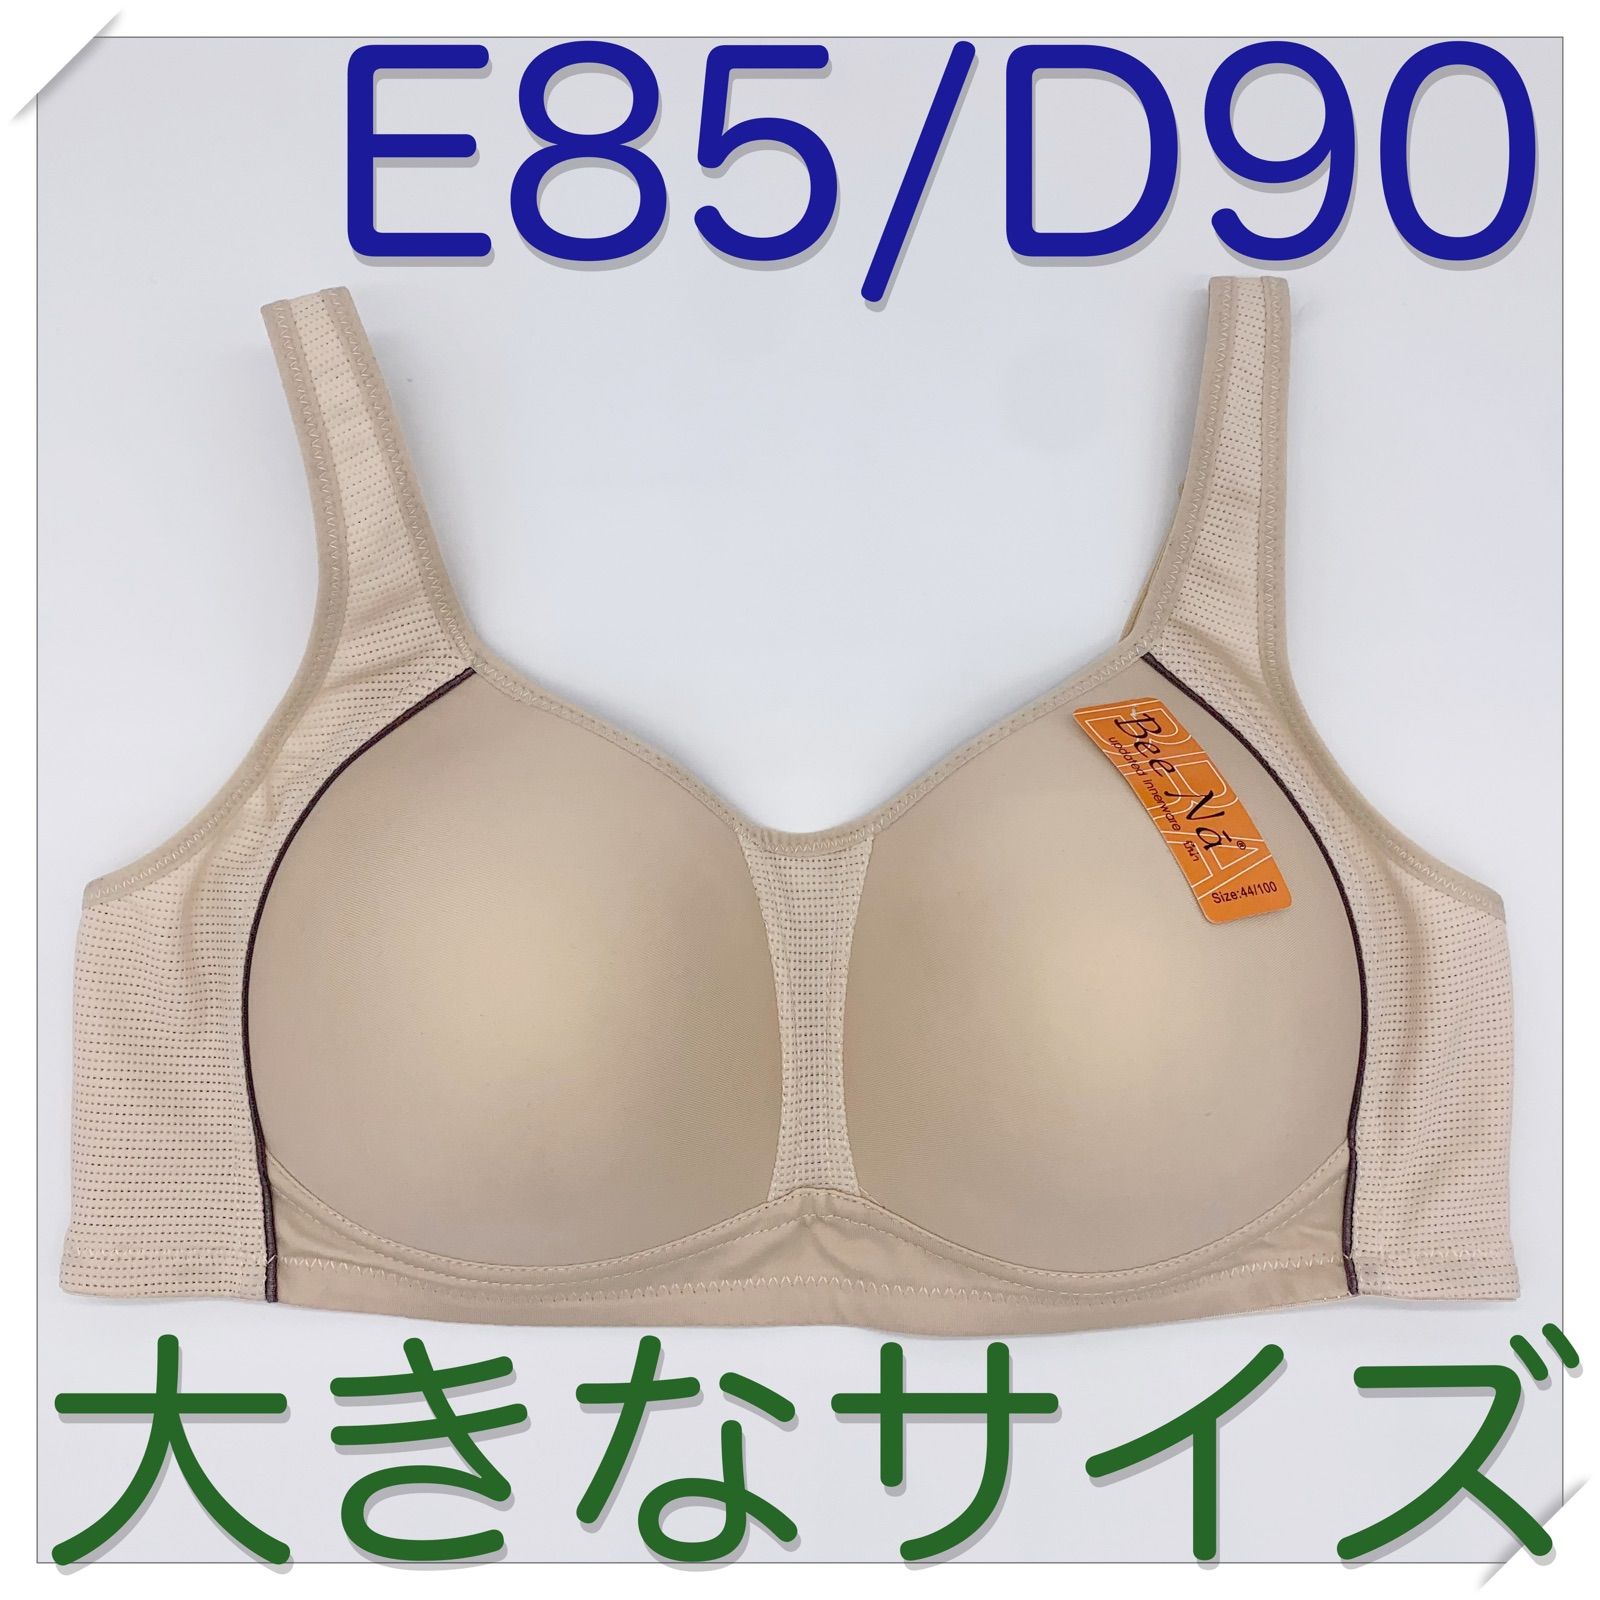 E85/D90】大きいブラ☆ノンワイヤー☆大きなサイズ☆ブラジャー_S26 ...